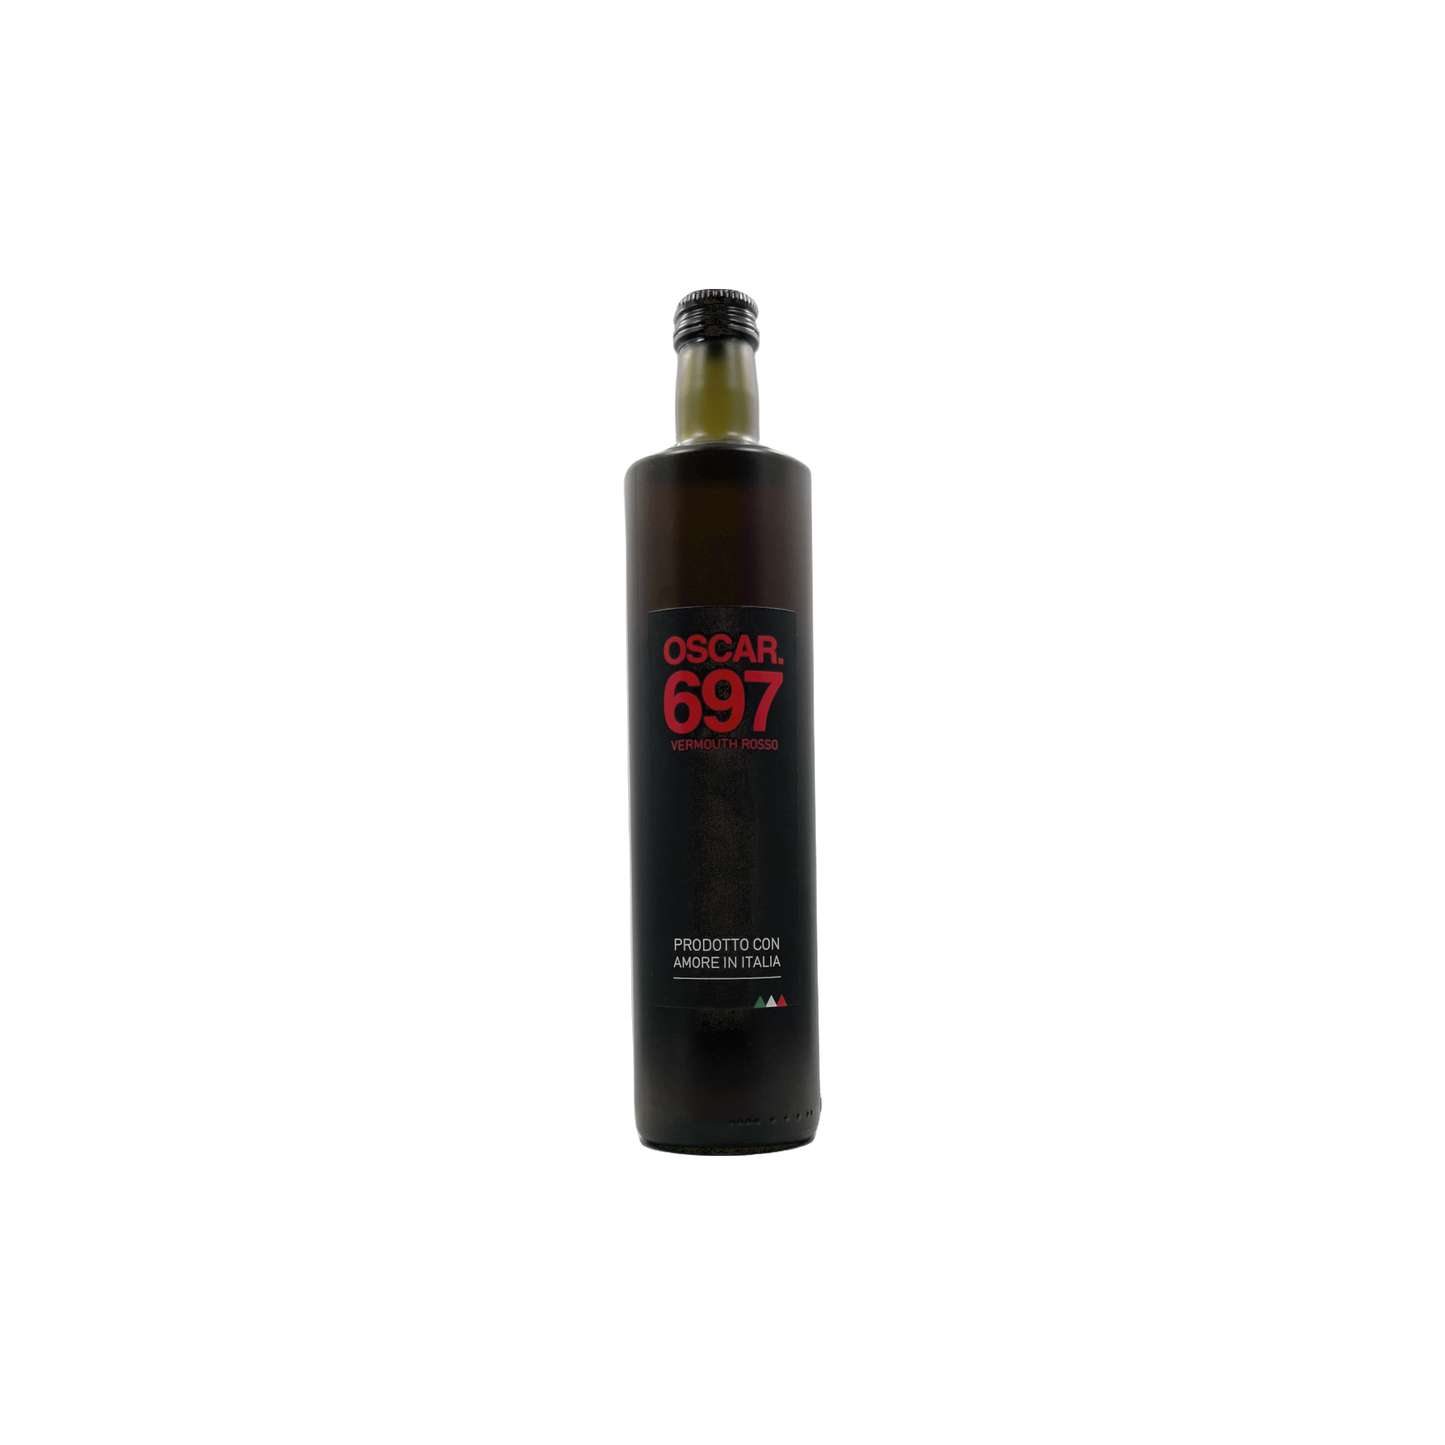 Oscar 697 Vermouth Rosso 750ml